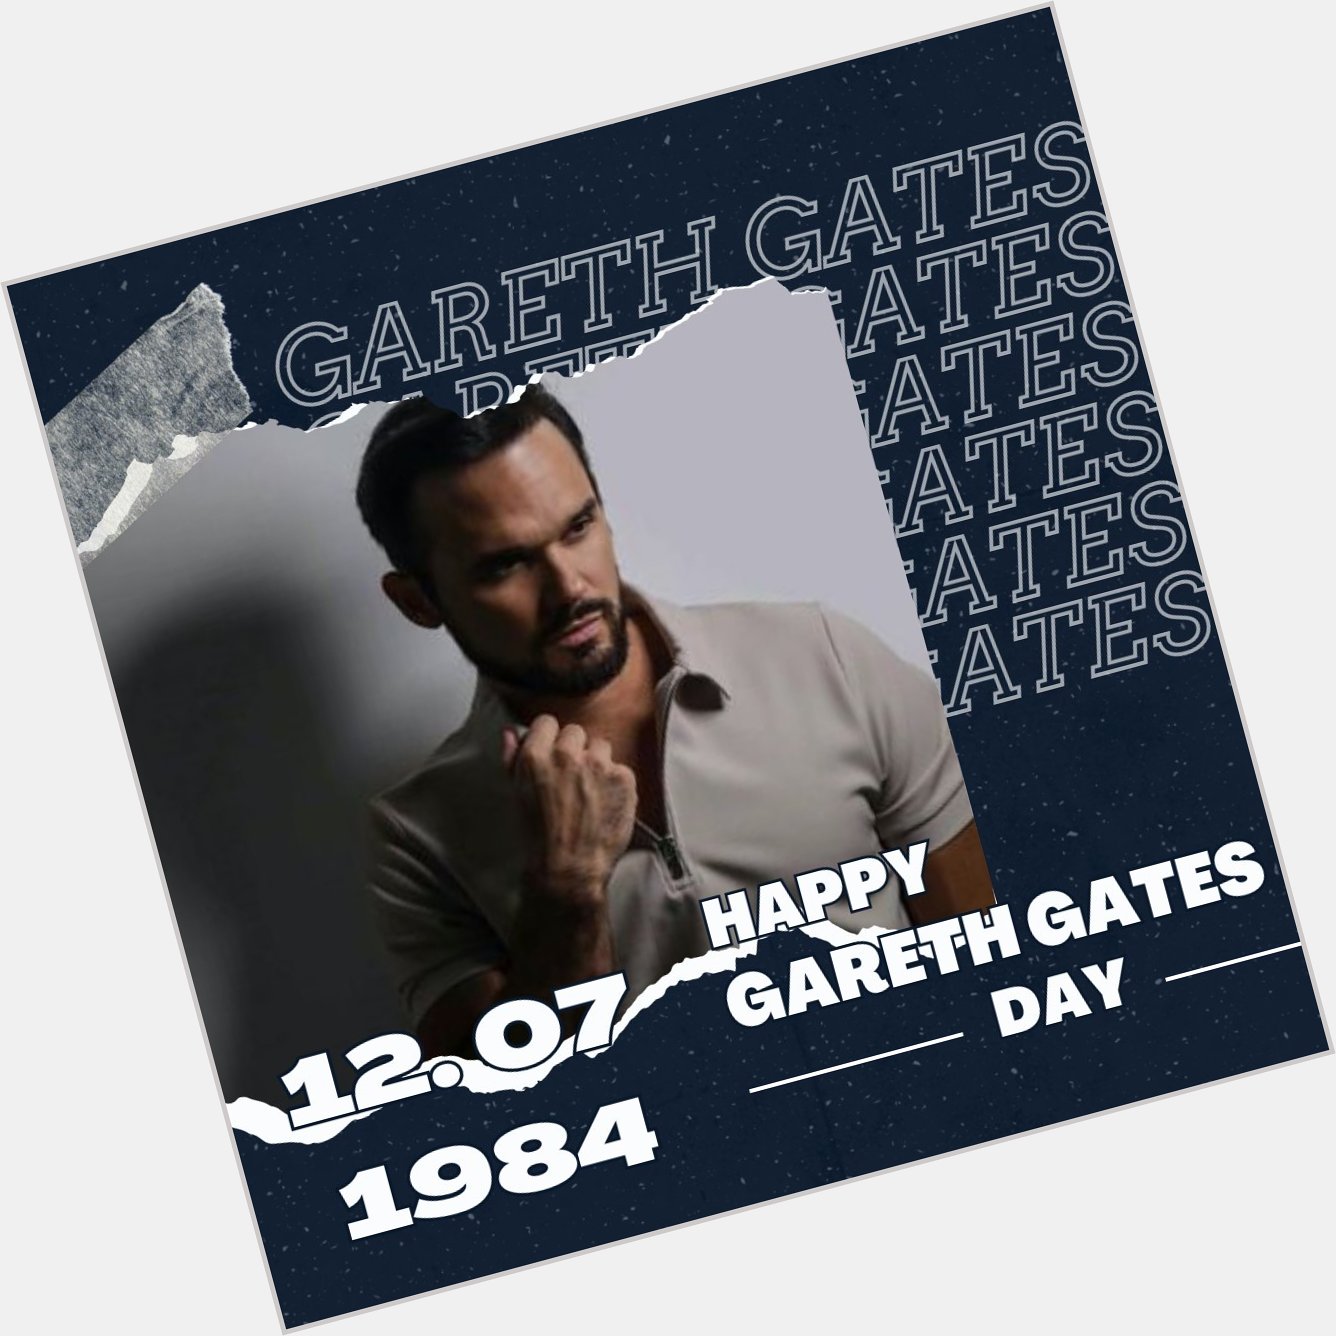 Happy Birthday Gareth Gates.                 Quelle: Unbekannt  